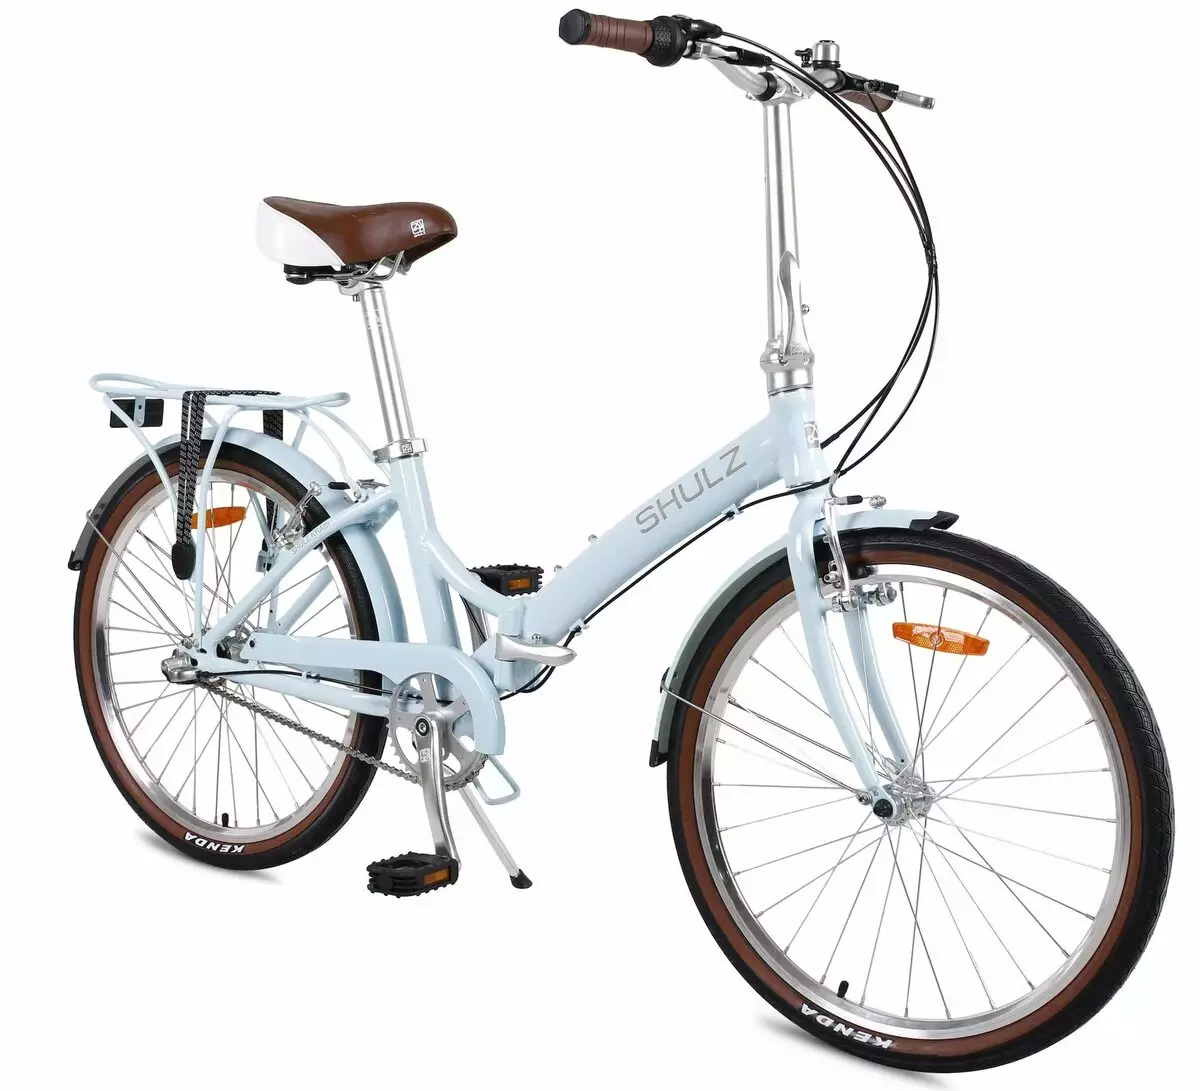 Składany rower Shulz: Krabi Coaster i Multi, Hopper XL i łatwe, inne modele dla dorosłych i dzieci 20396_28